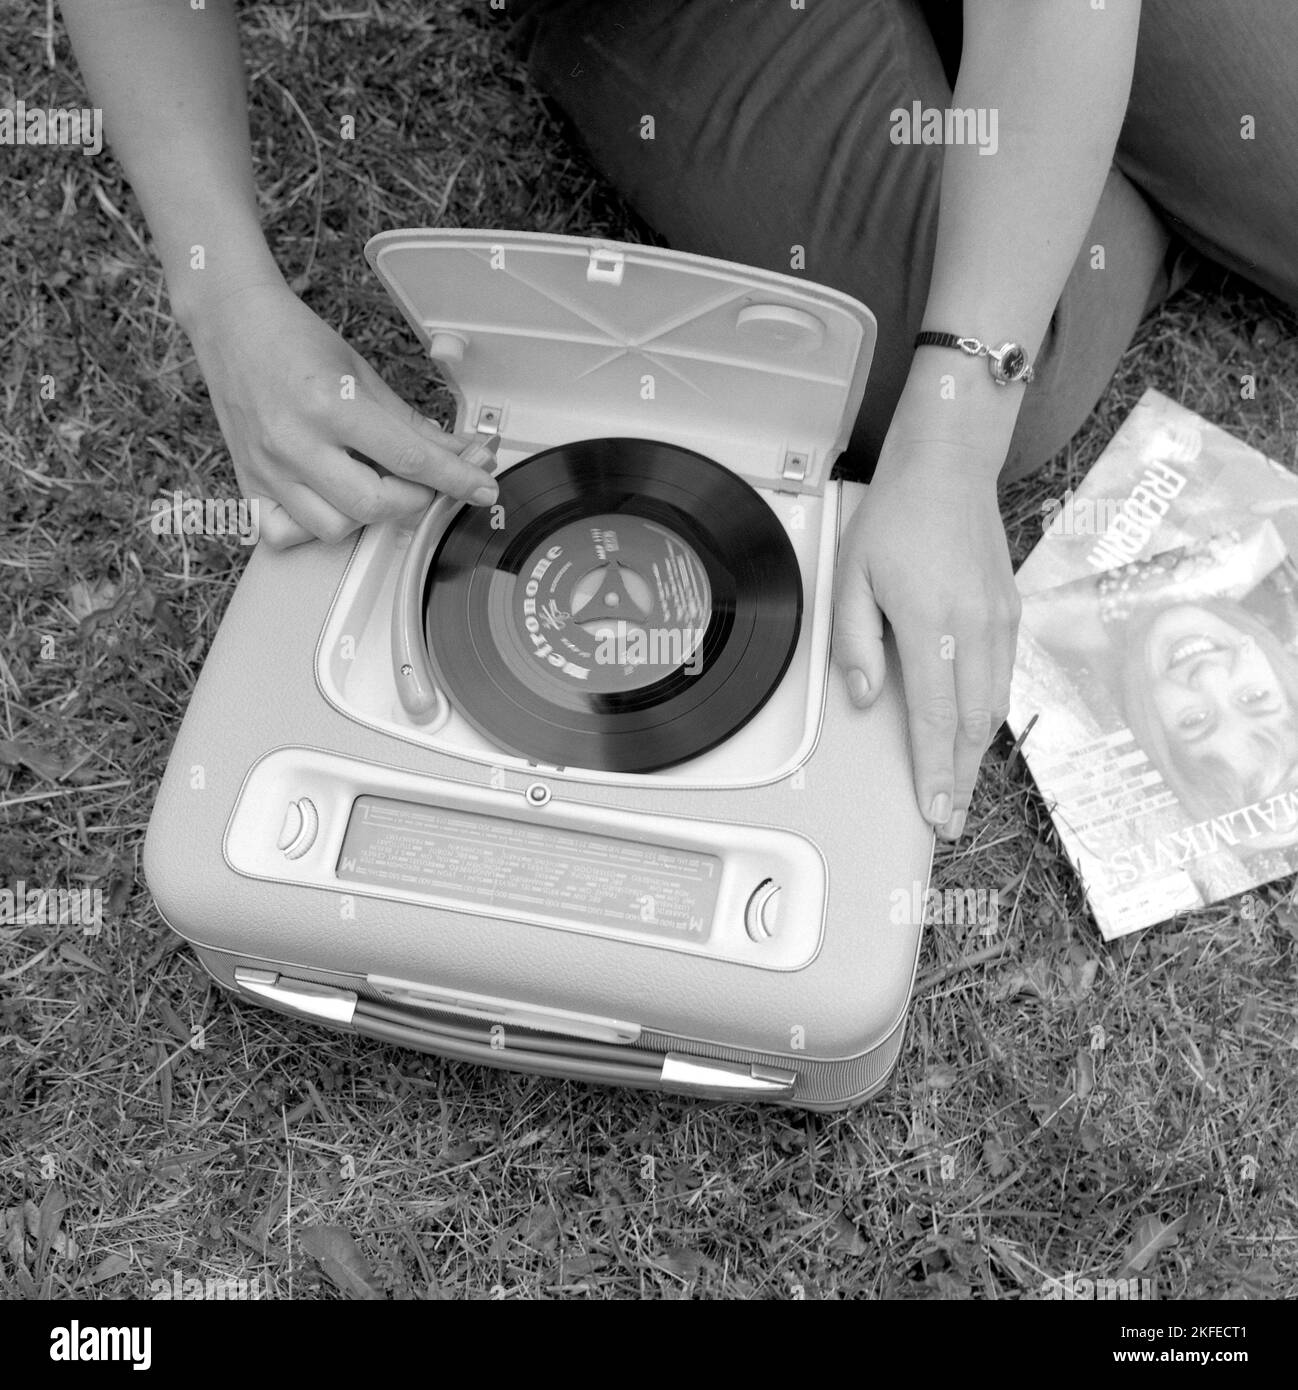 Come appariva negli anni '1960s una radio portatile combinata e un lettore di dischi. Un giocatore di grammofono come guardava in questo momento. Questo modello è stato alimentato a batteria e potrebbe giocare singoli, 7 pollici 45 giri/min dischi in vinile. È anche possibile ascoltare la radio sulla sua funzione radio, ruotando le manopole sulla frequenza e la stazione che si desidera ascoltare. Un pratico coperchio si vede aperto e quando non si usa il grammofono lo si chiude. Svezia 1960 Conard Ref 4264 Foto Stock